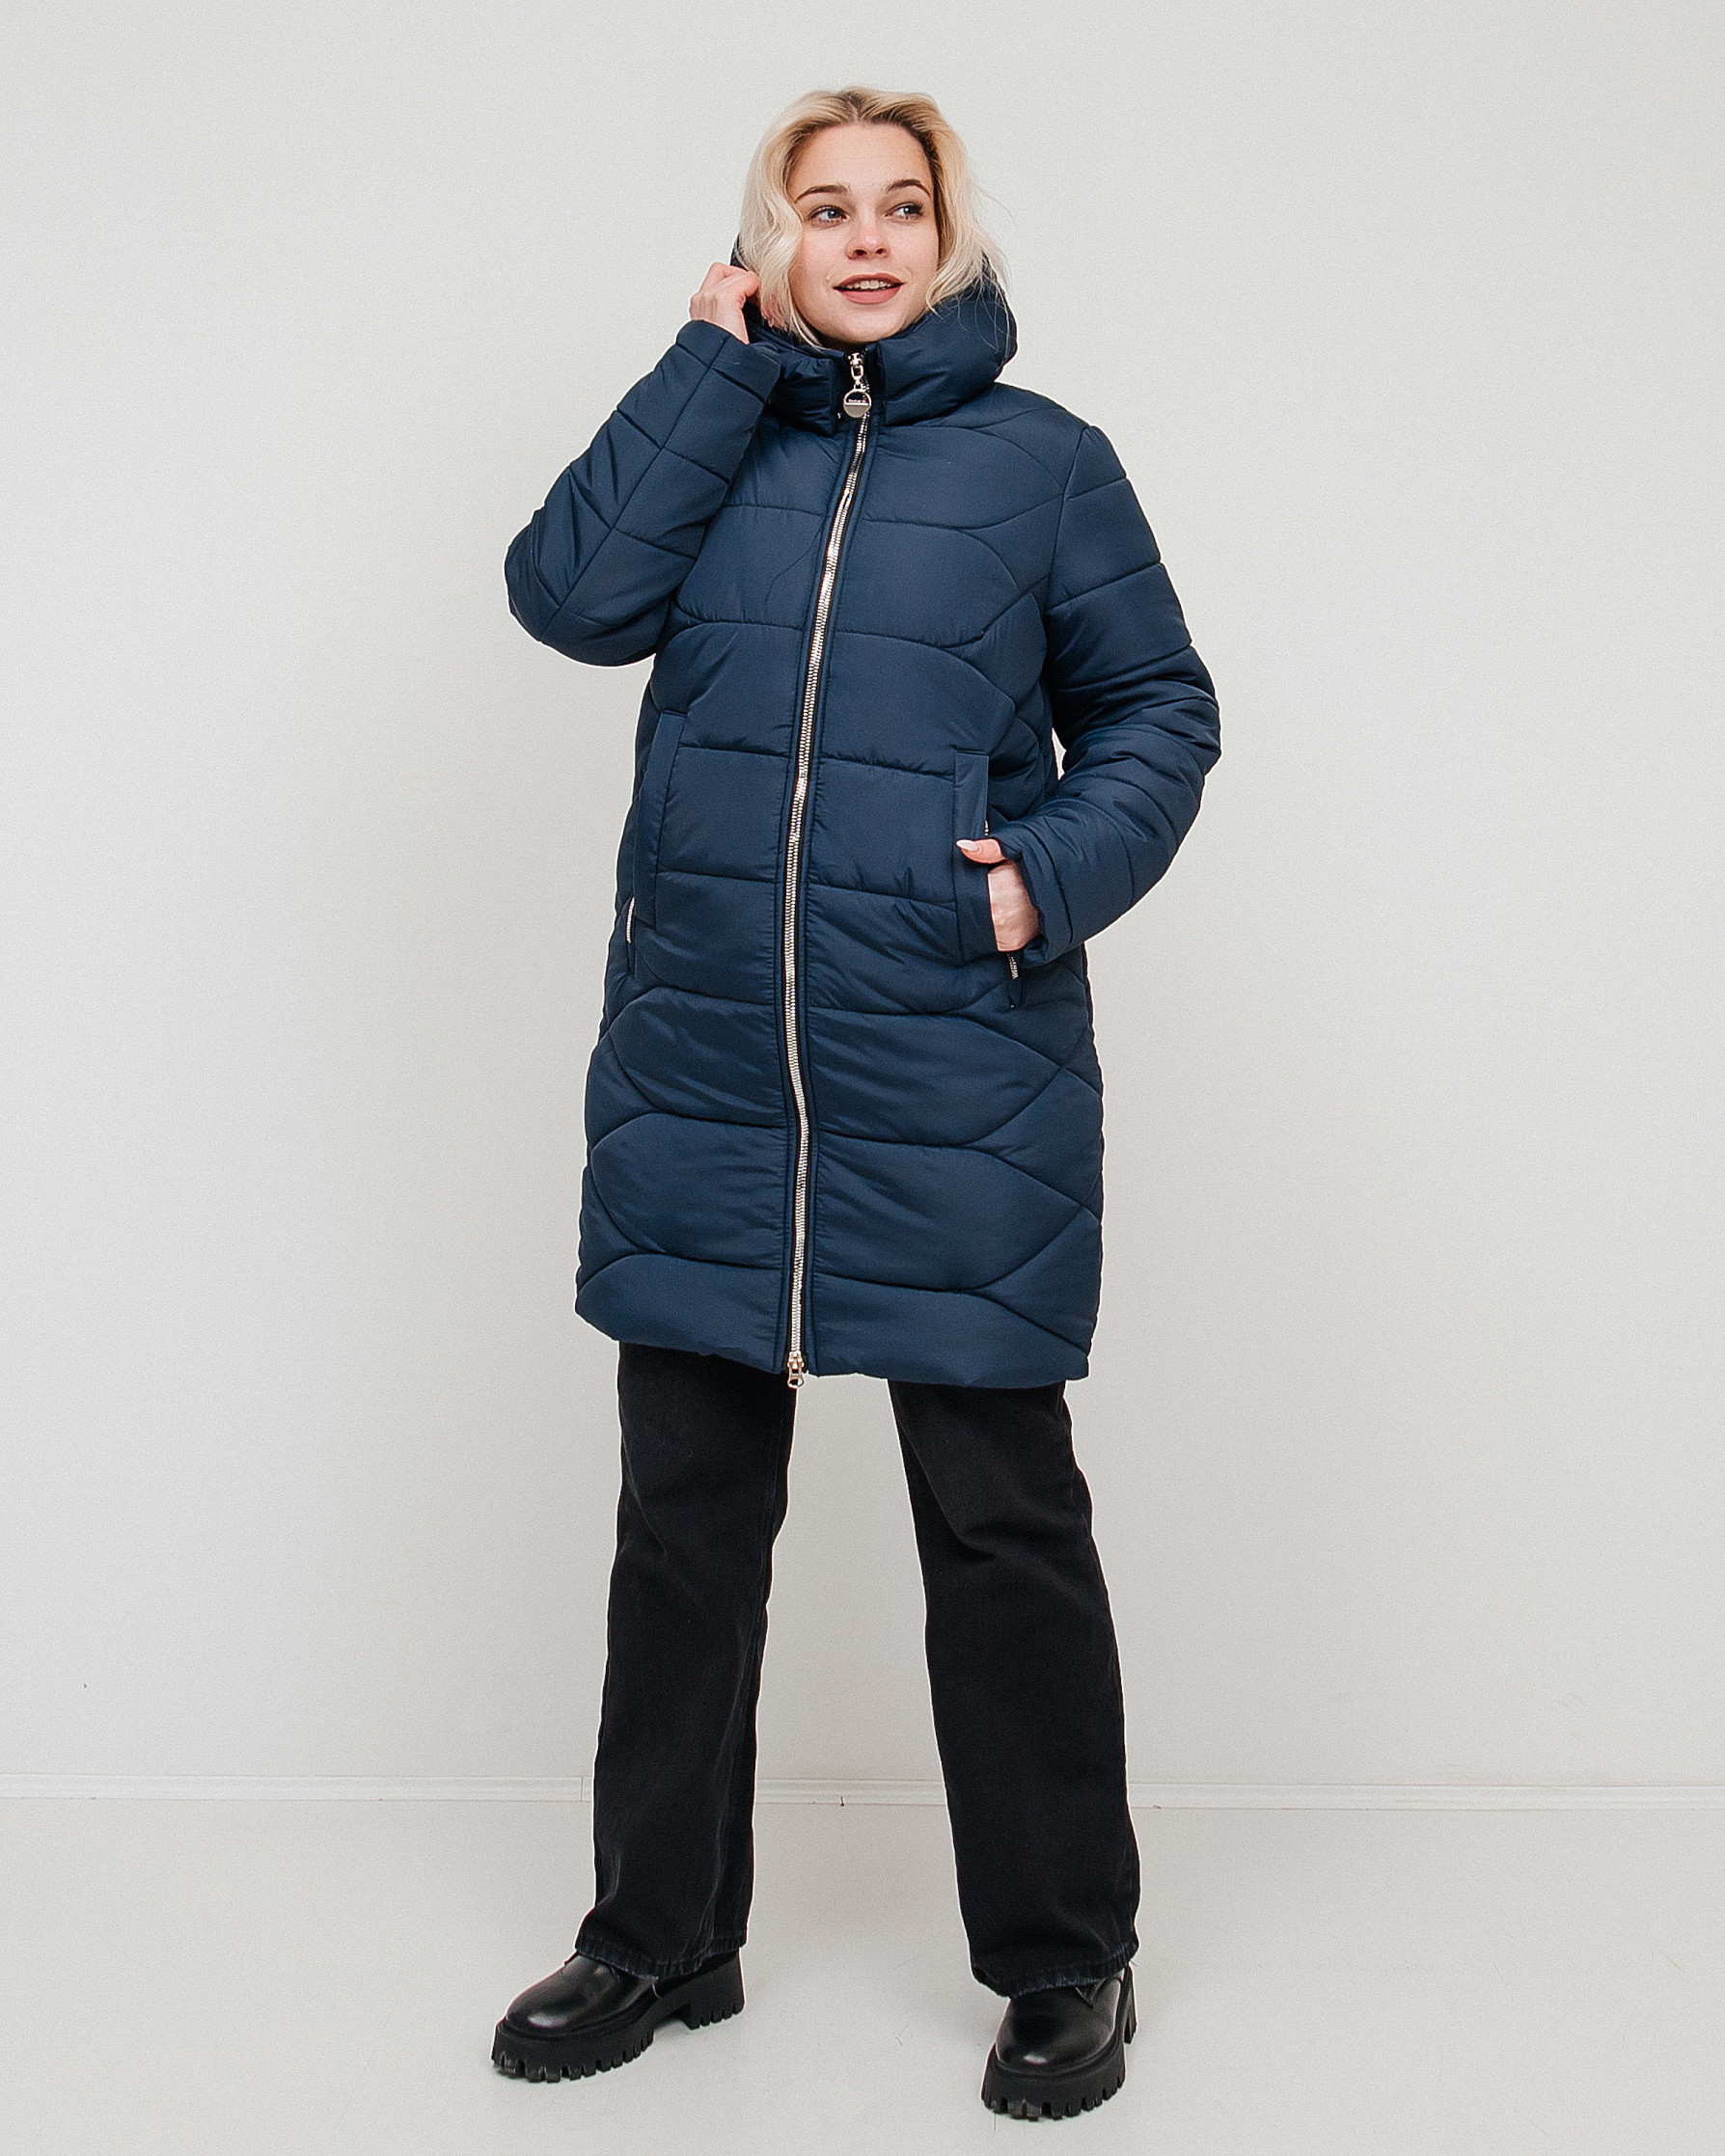 Женские зимние куртки оптом (Харьков) – выгодная покупка для себя и бизнеса